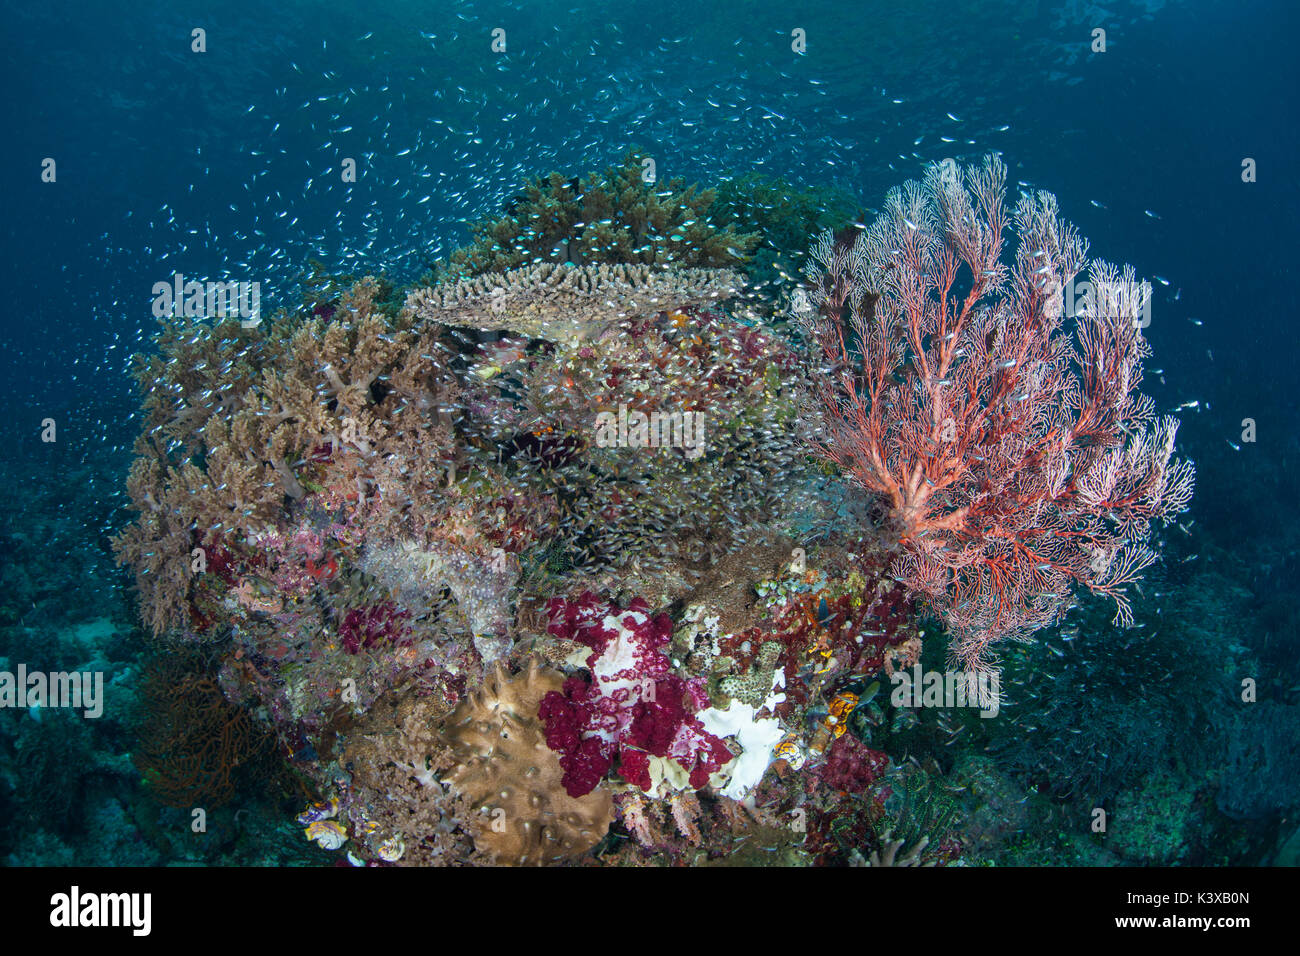 De beaux coraux et une pléthore de poissons se développer sur un récif dans Raja Ampat, en Indonésie. cette région éloignée est connue pour la biodiversité marine spectaculaire. Banque D'Images